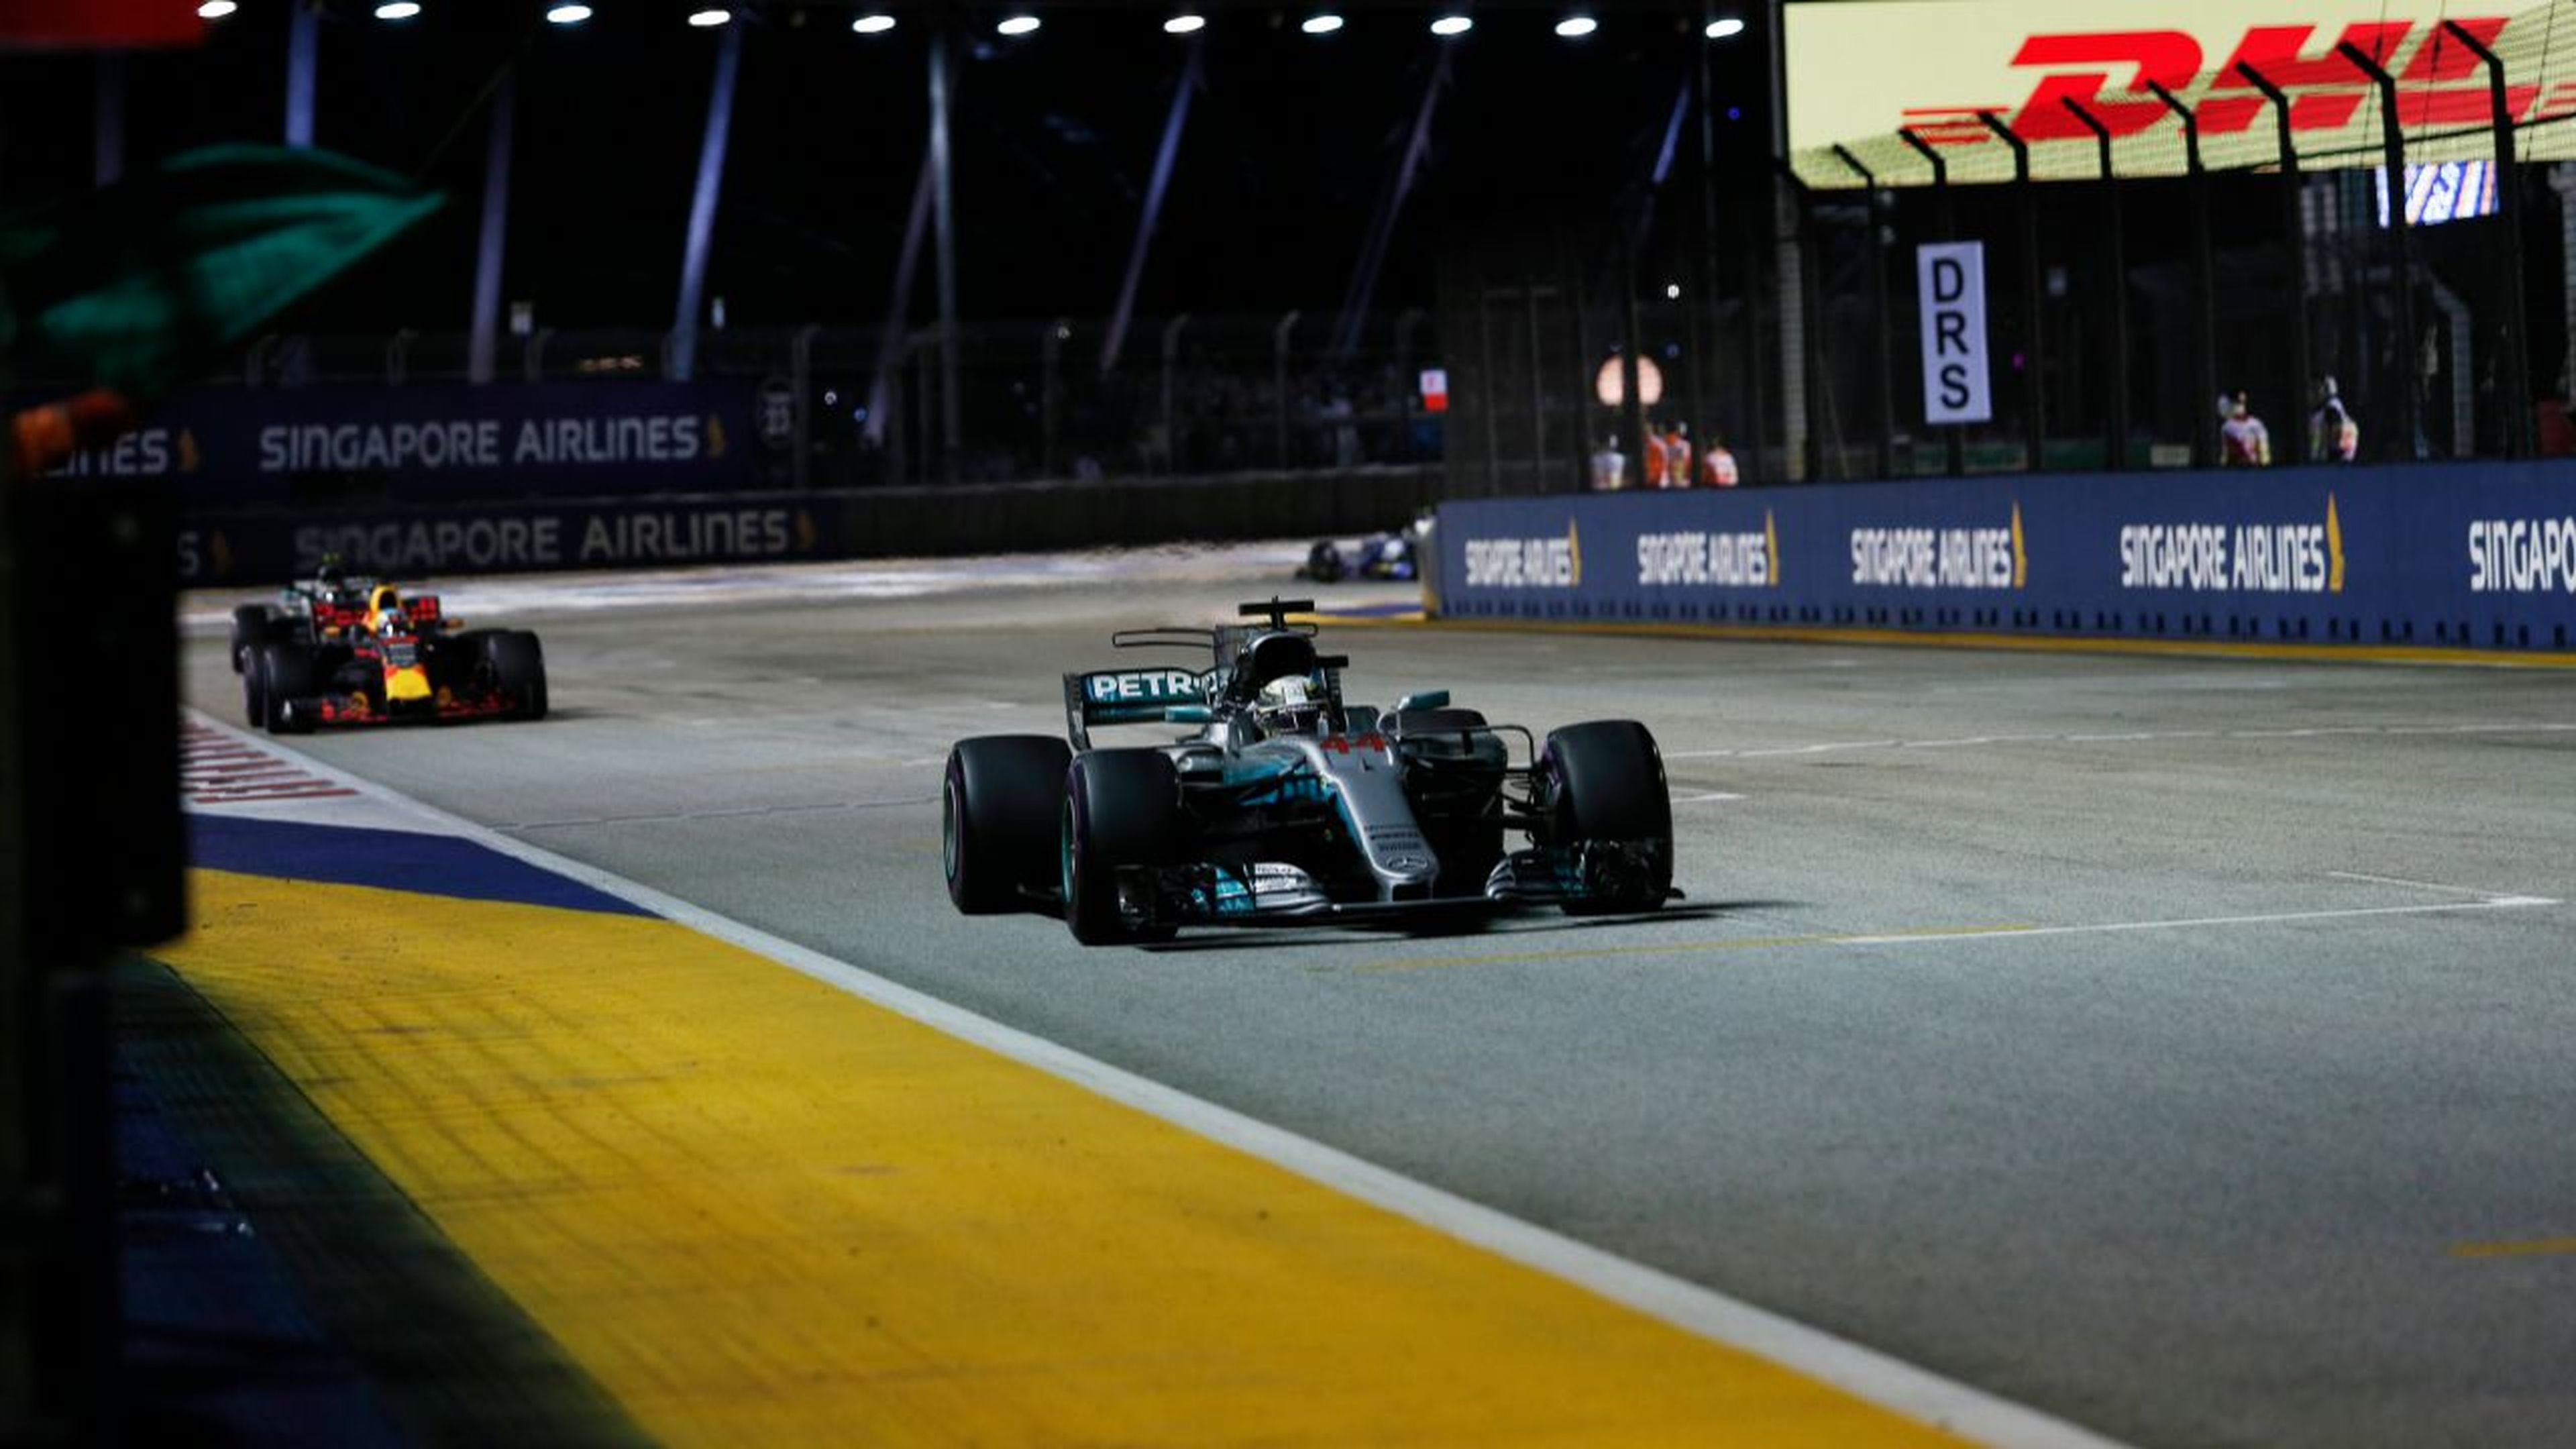 Victoria de Lewis Hamilton en el GP de Singapur